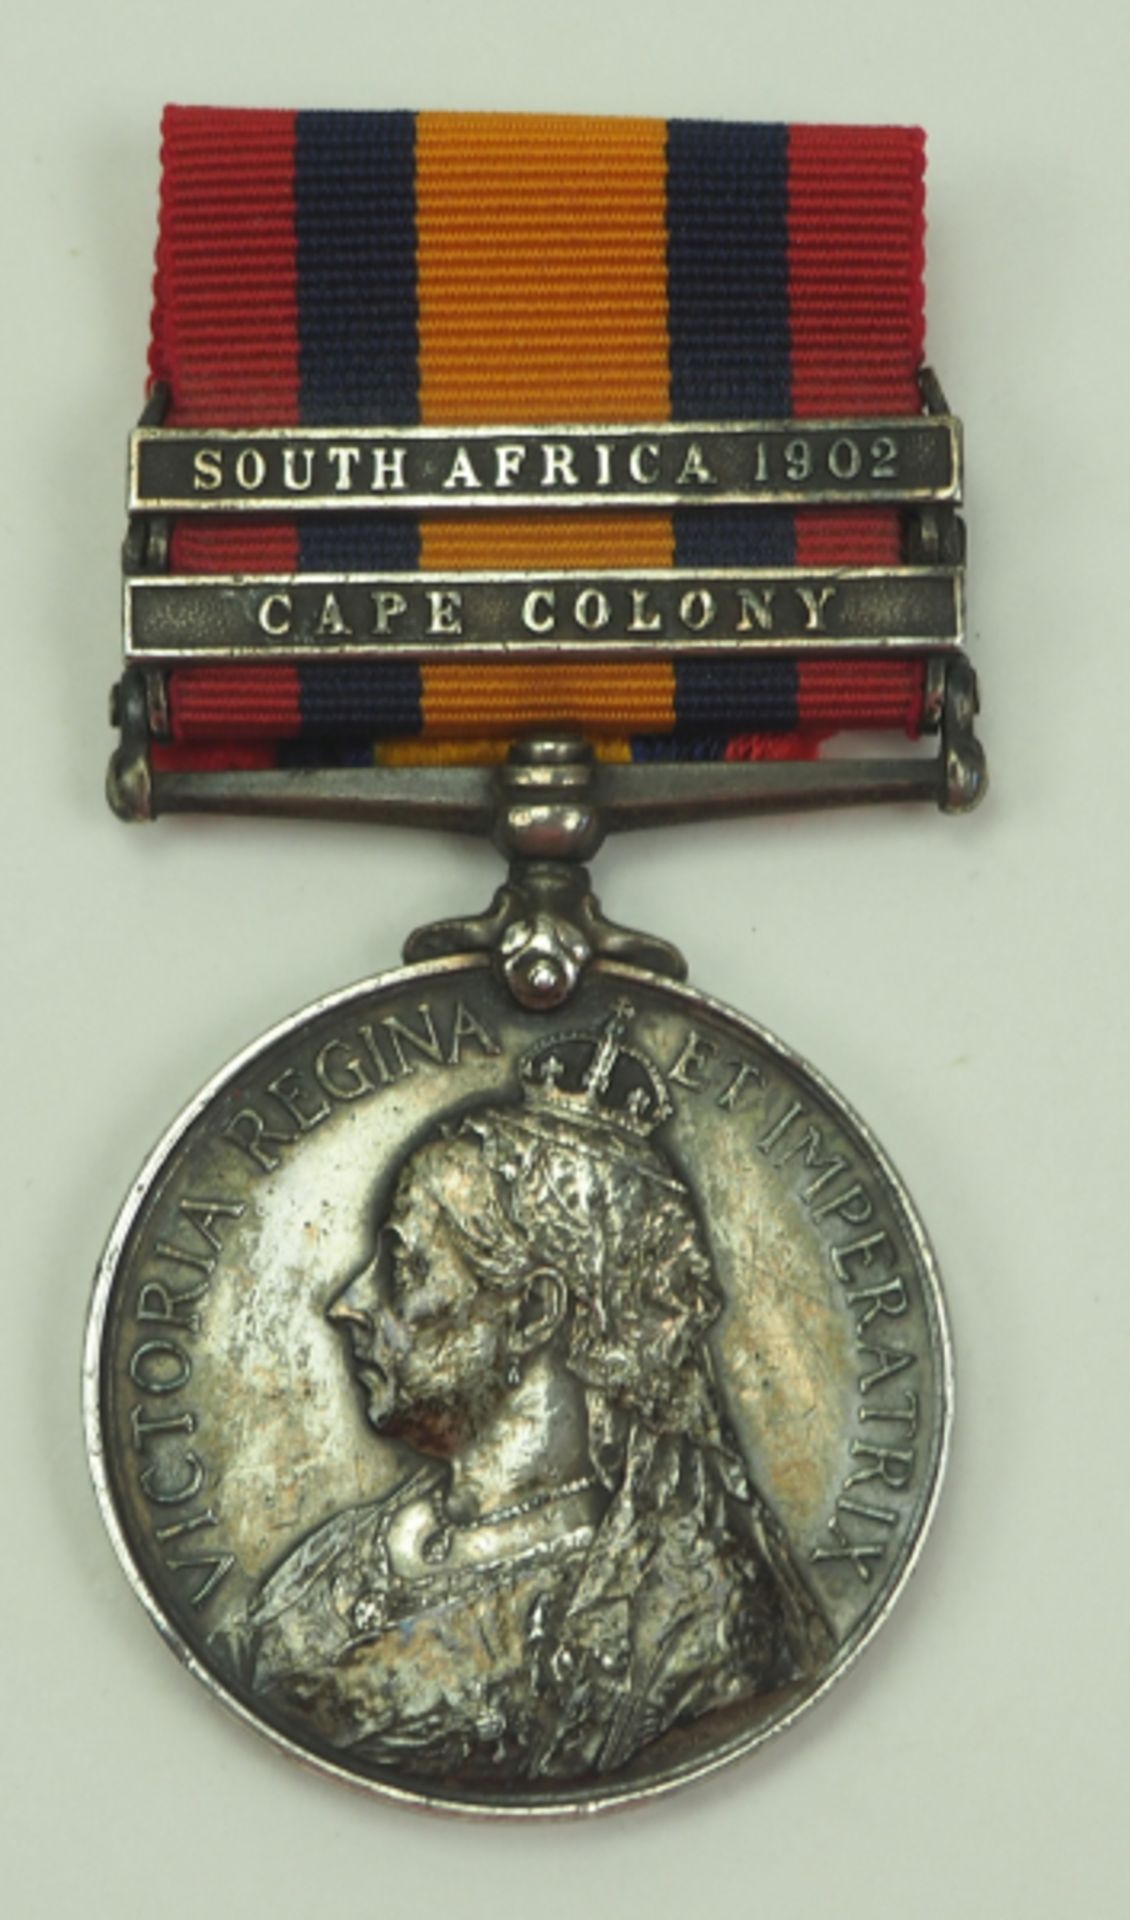 Großbritannien: Southafrica Medal, mit den Spangen CAPE COLONY und SOUTH AFRICA 1902.Silber, im Rand